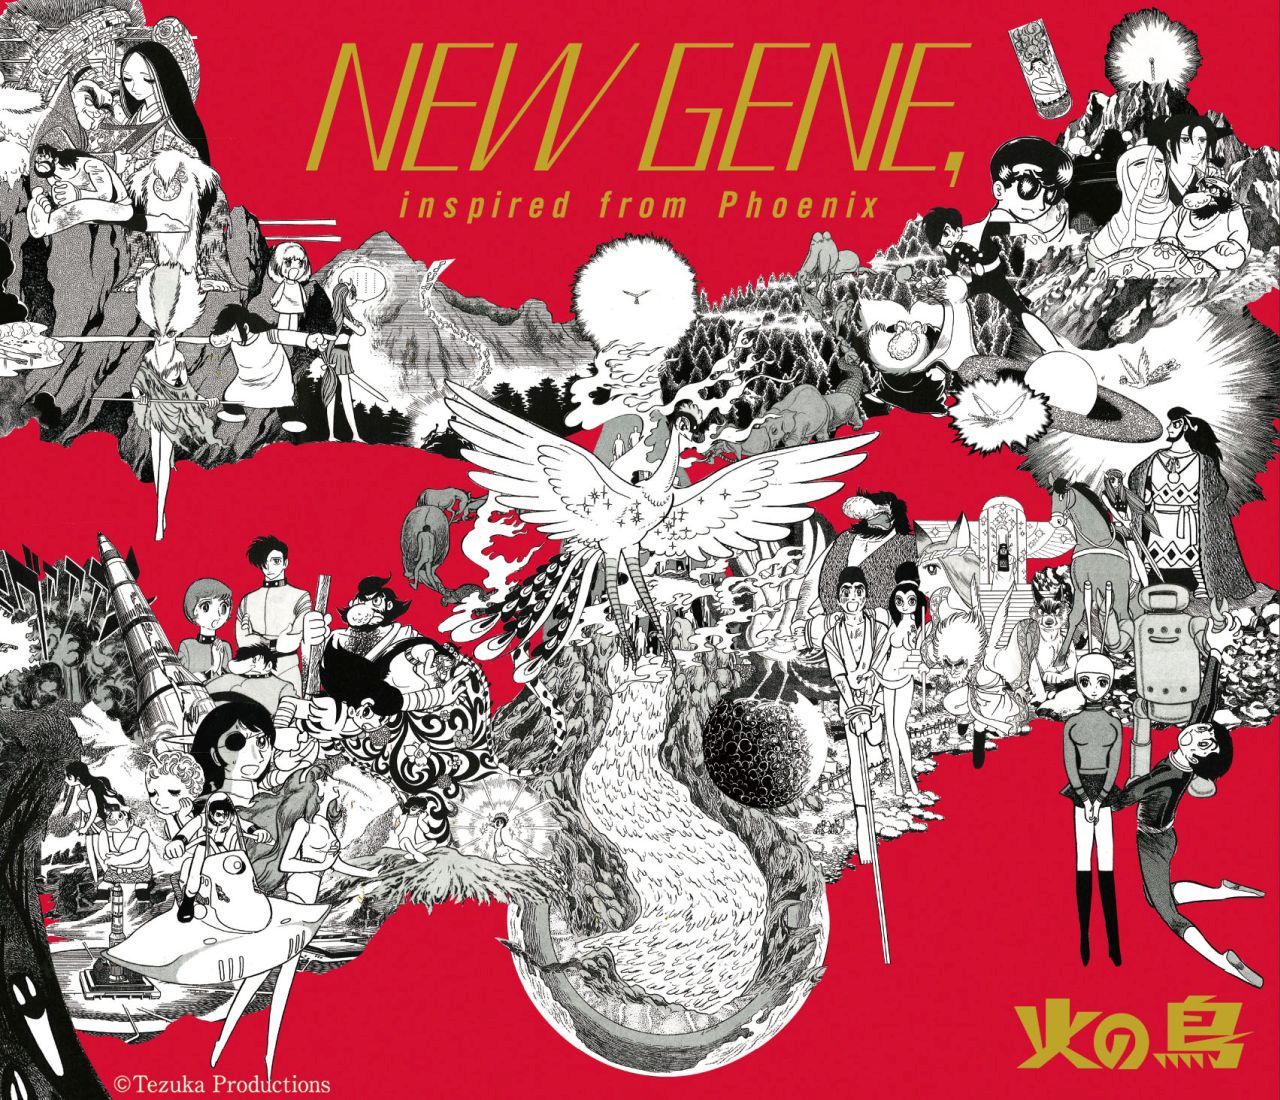 手塚治虫生誕90周年記念 火の鳥 COMPILATION ALBUM 『NEW GENE, inspired from Phoenix』画像